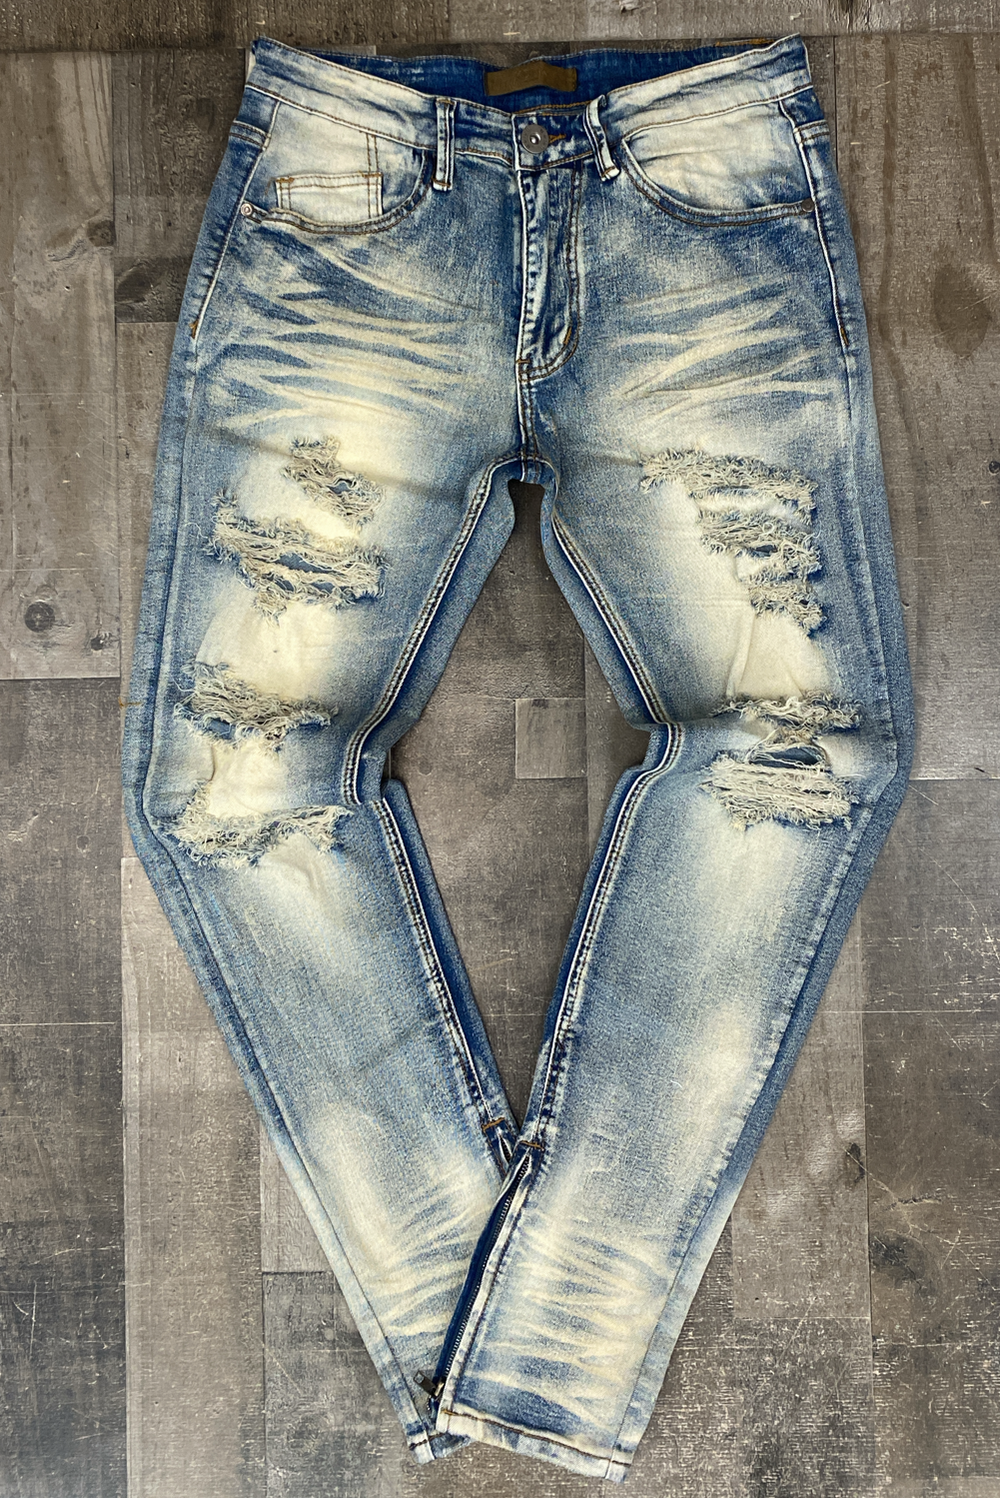 KDNK- distressed jeans (vintage)